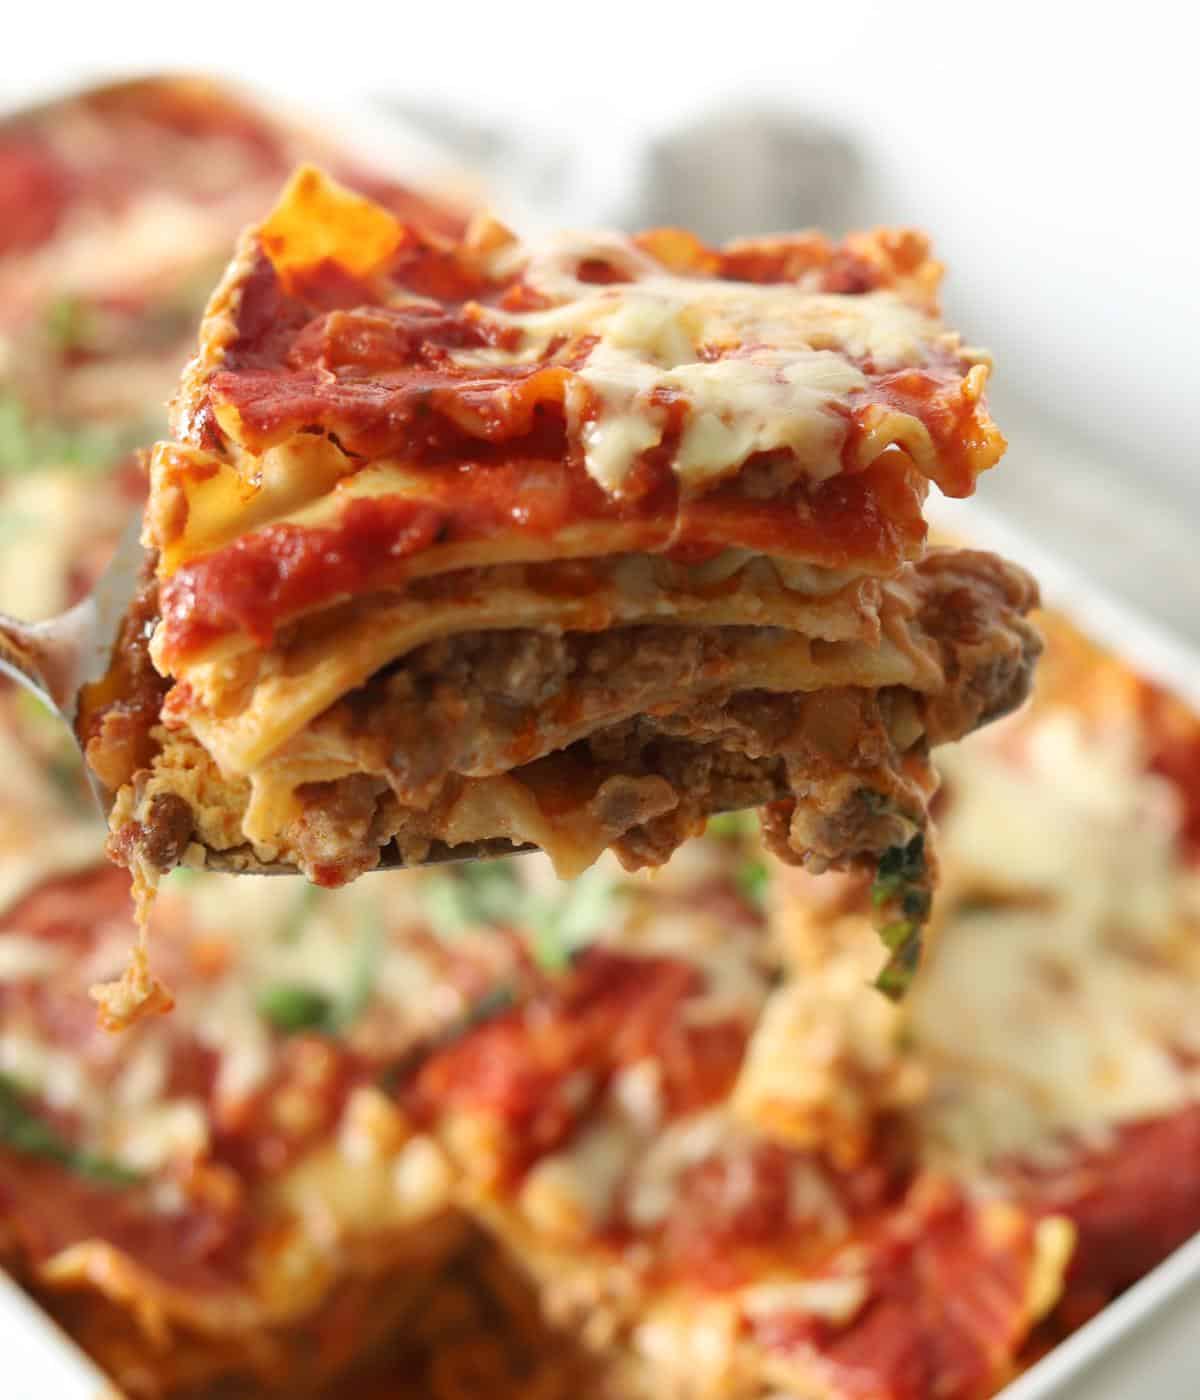 slice of lasagna being held over the tray of lasagna al forno